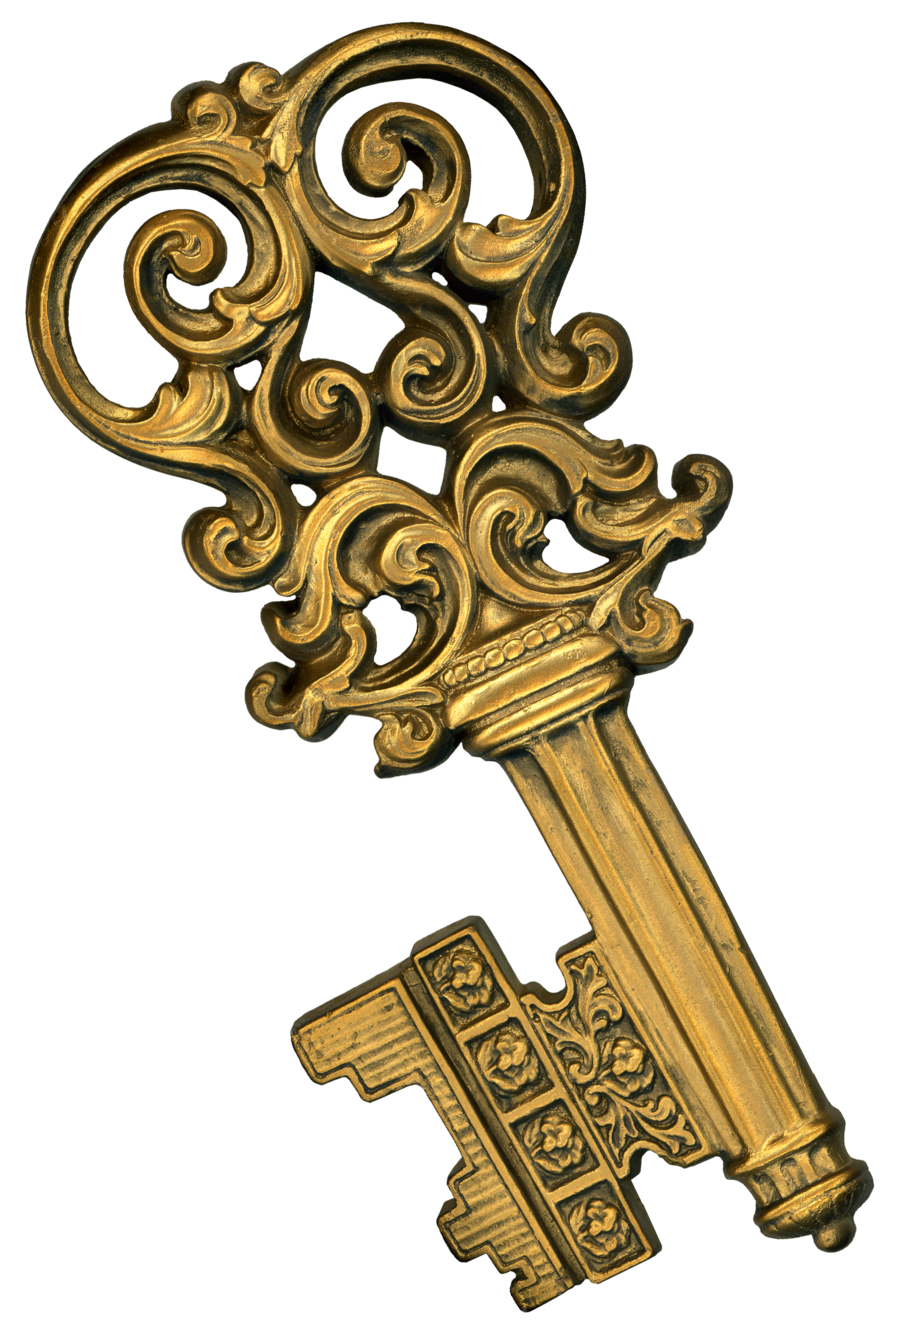 Key pirate key